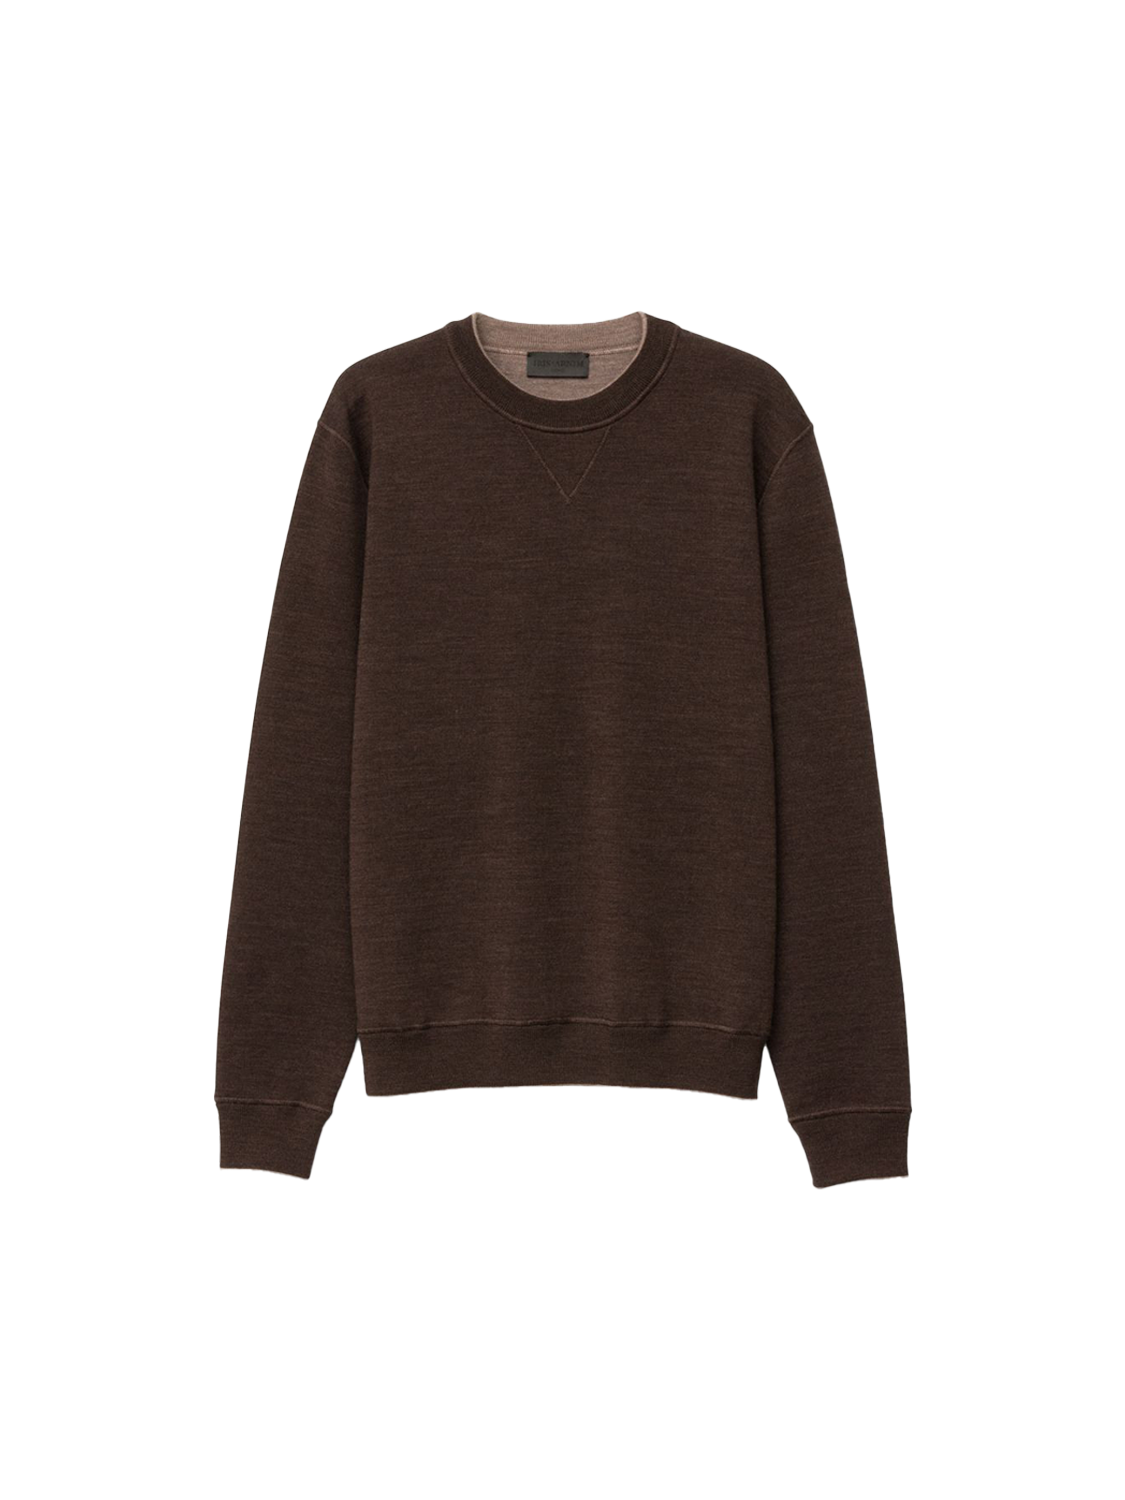 Dawson - Reversible merino wool sweater 